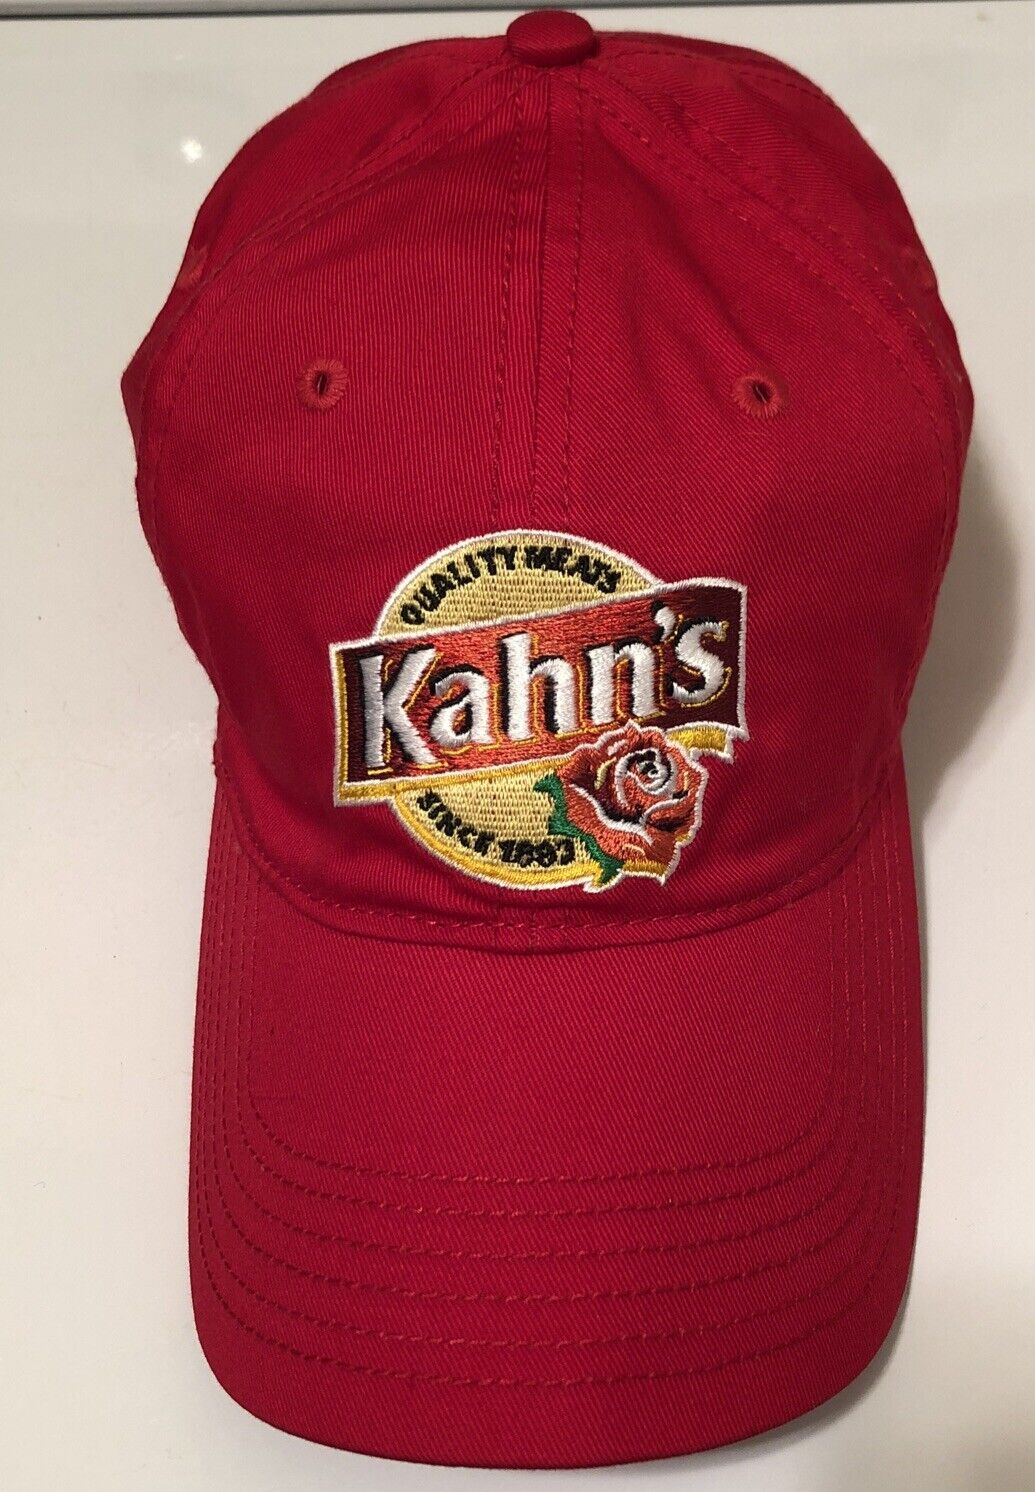 VINTAGE KAHN’S Quality Meats Cincinnati Ohio Red Adjustable NEW Captiv8